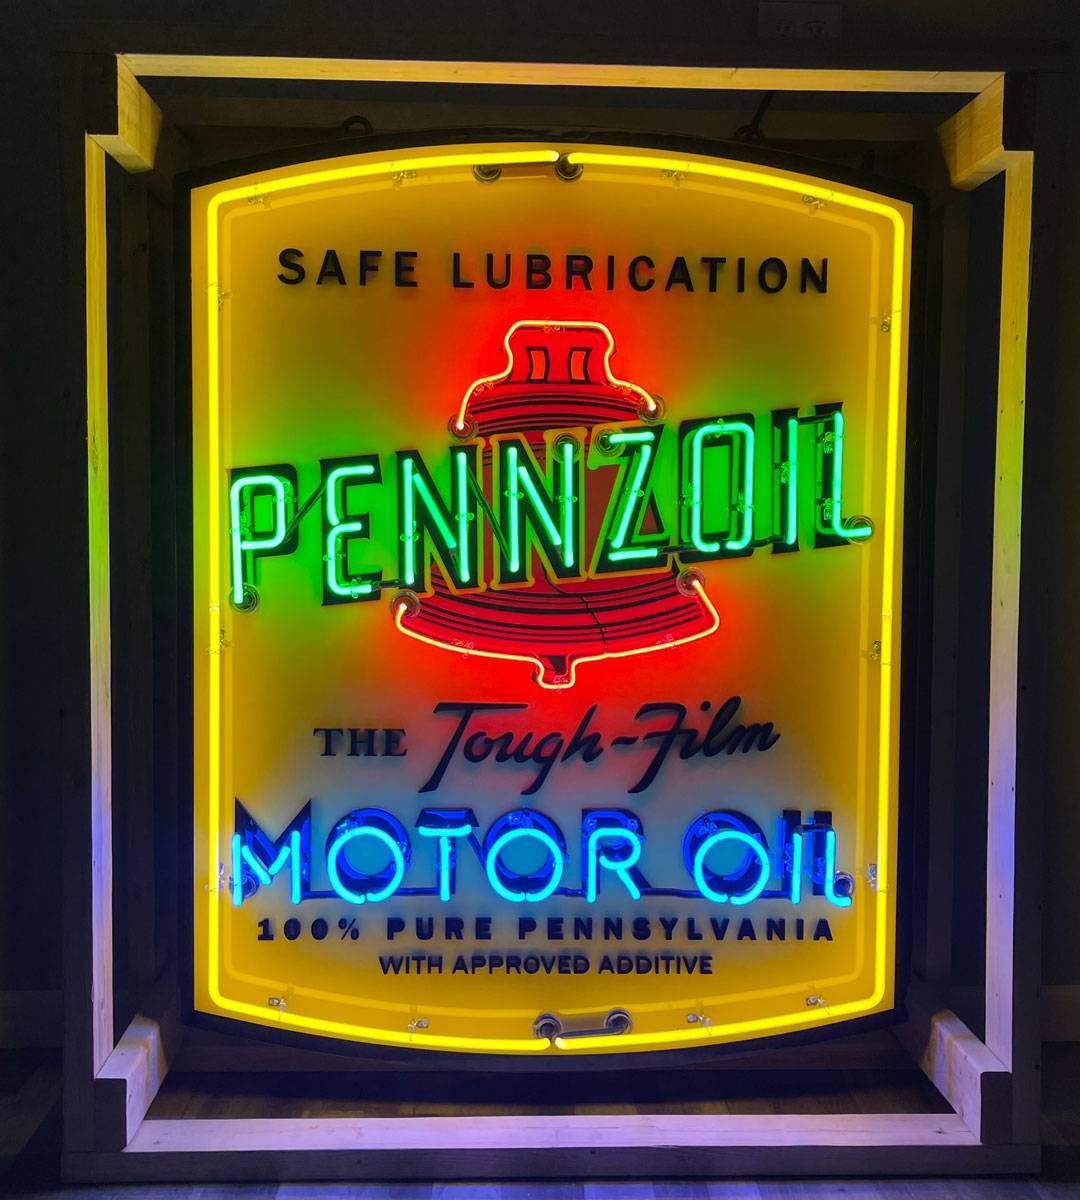 Pennzoil – The Tough Film